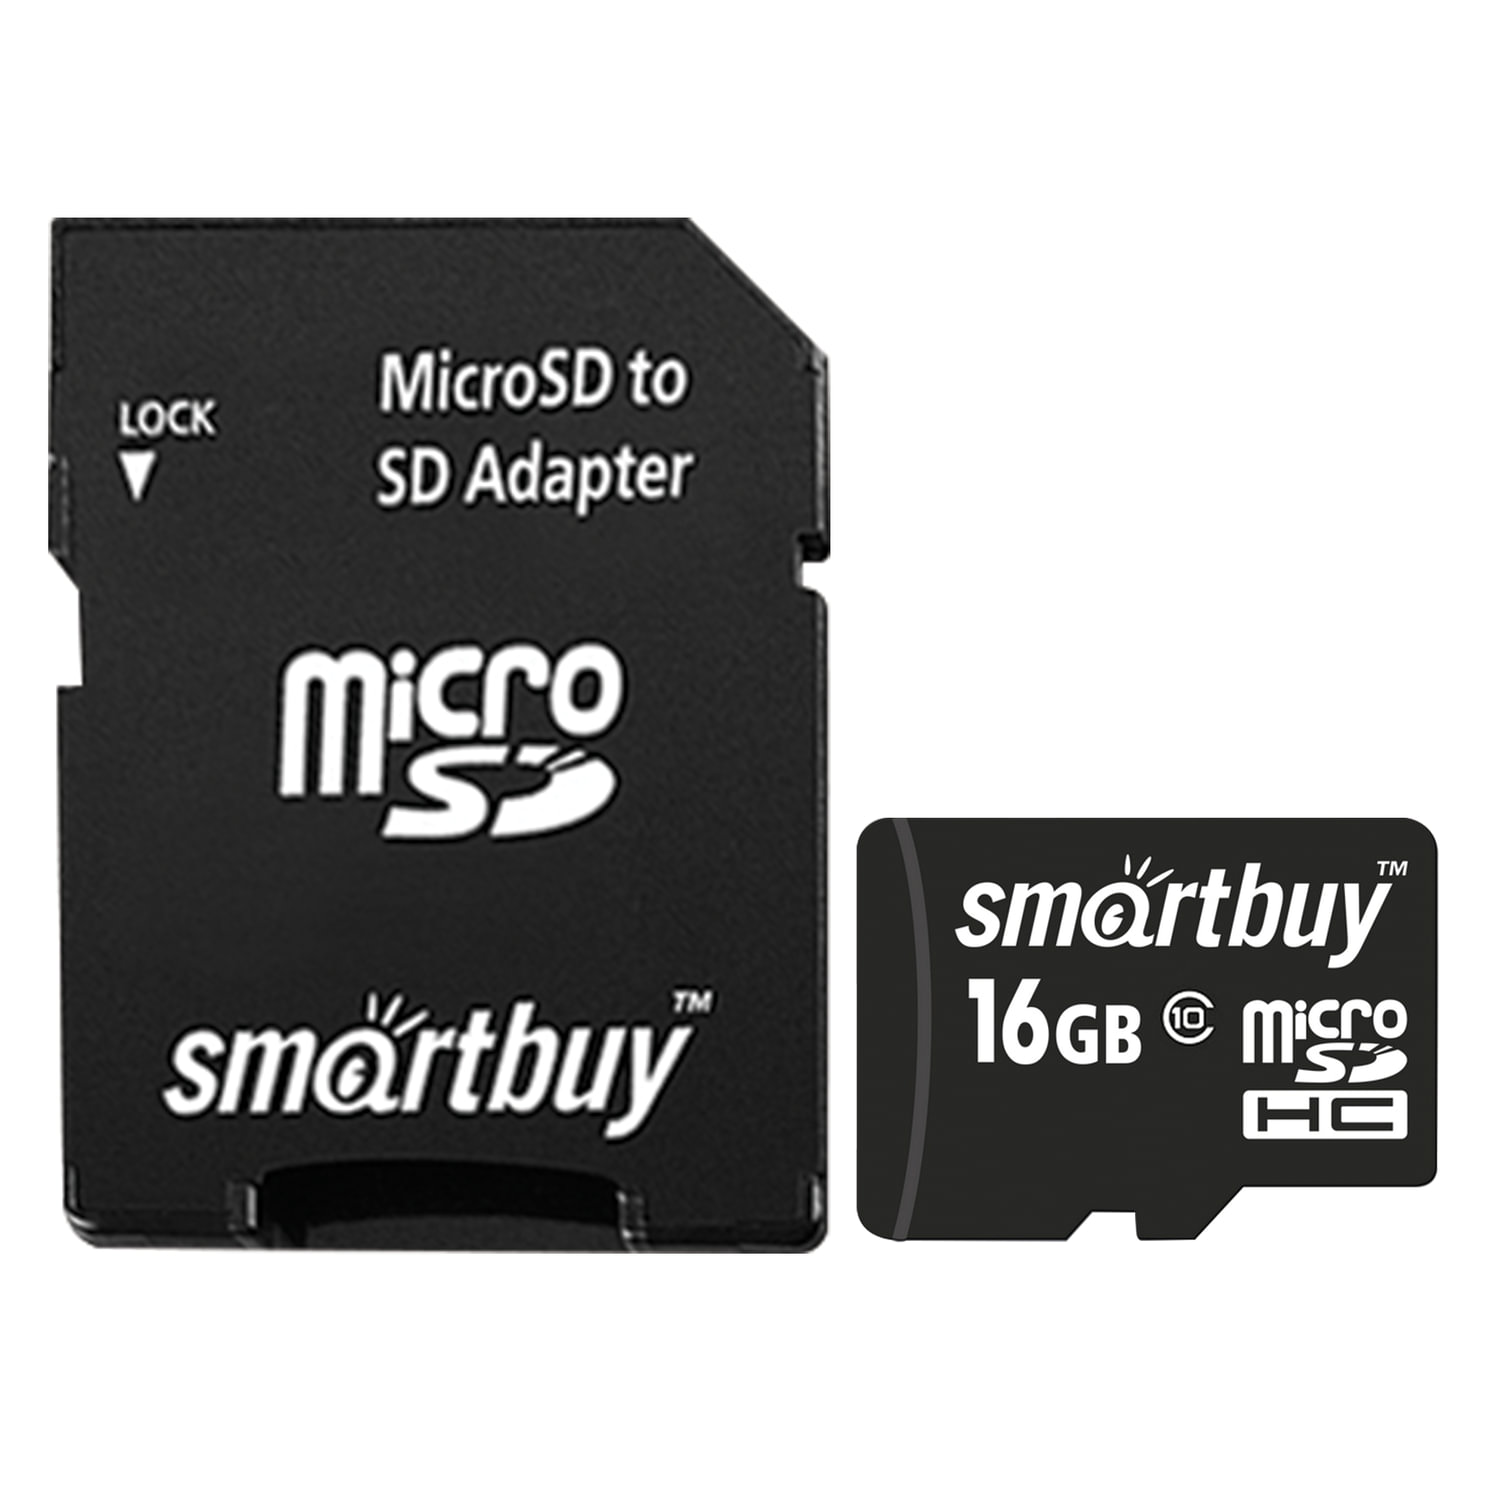 Микро сд ноутбуке. SMARTBUY 32gb MICROSD. Карта памяти SMARTBUY MICROSDHC class 10 8gb + SD Adapter. Карта памяти SMARTBUY MICROSDHC 16gb. Карта памяти Micro SDHC, 32 GB, SMARTBUY, 10 МБ/сек. (Class 10), с адаптером, sb32gbsdcl10-01.